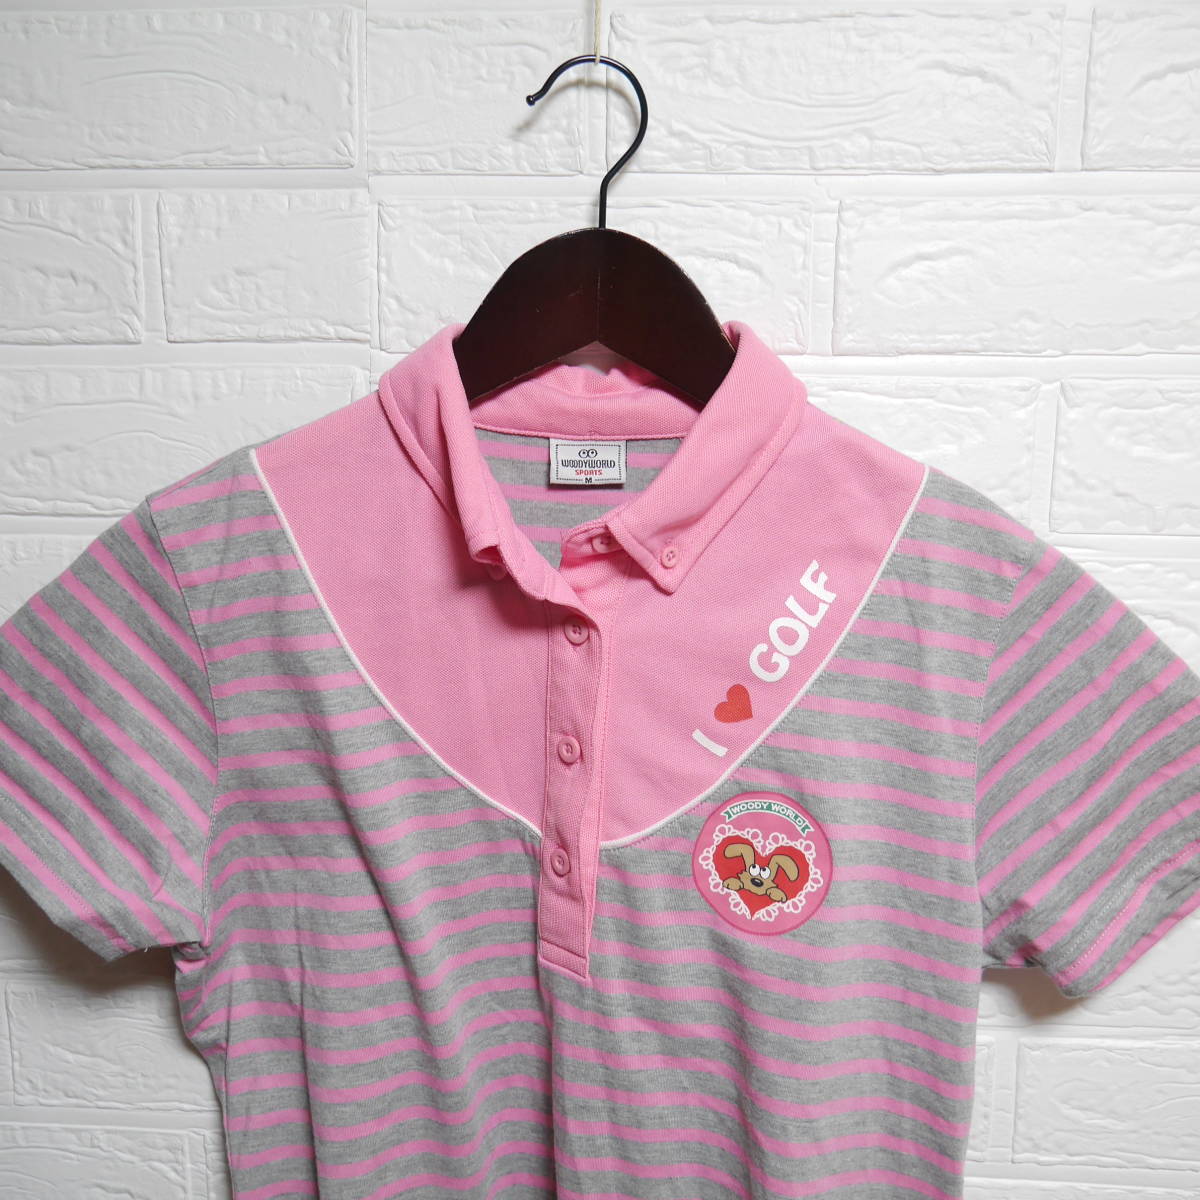 大注目】 WOODY WORLD golf ゴルフウェア ポロシャツ 半袖シャツ